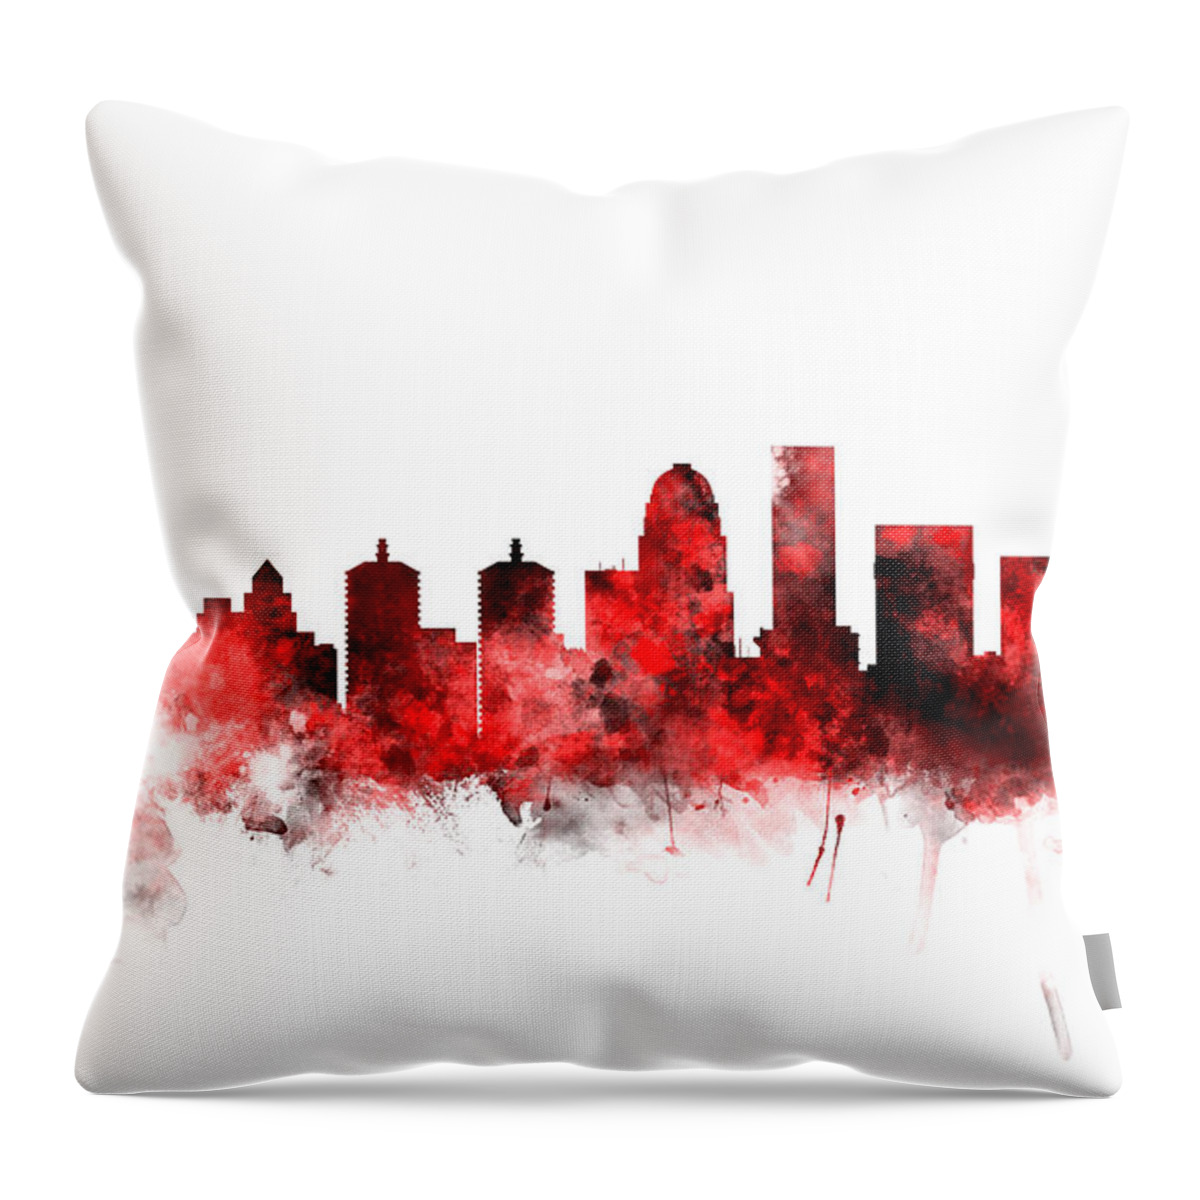 Watercolour Throw Pillow featuring the digital art Louisville Kentucky City Skyline #8 by Michael Tompsett